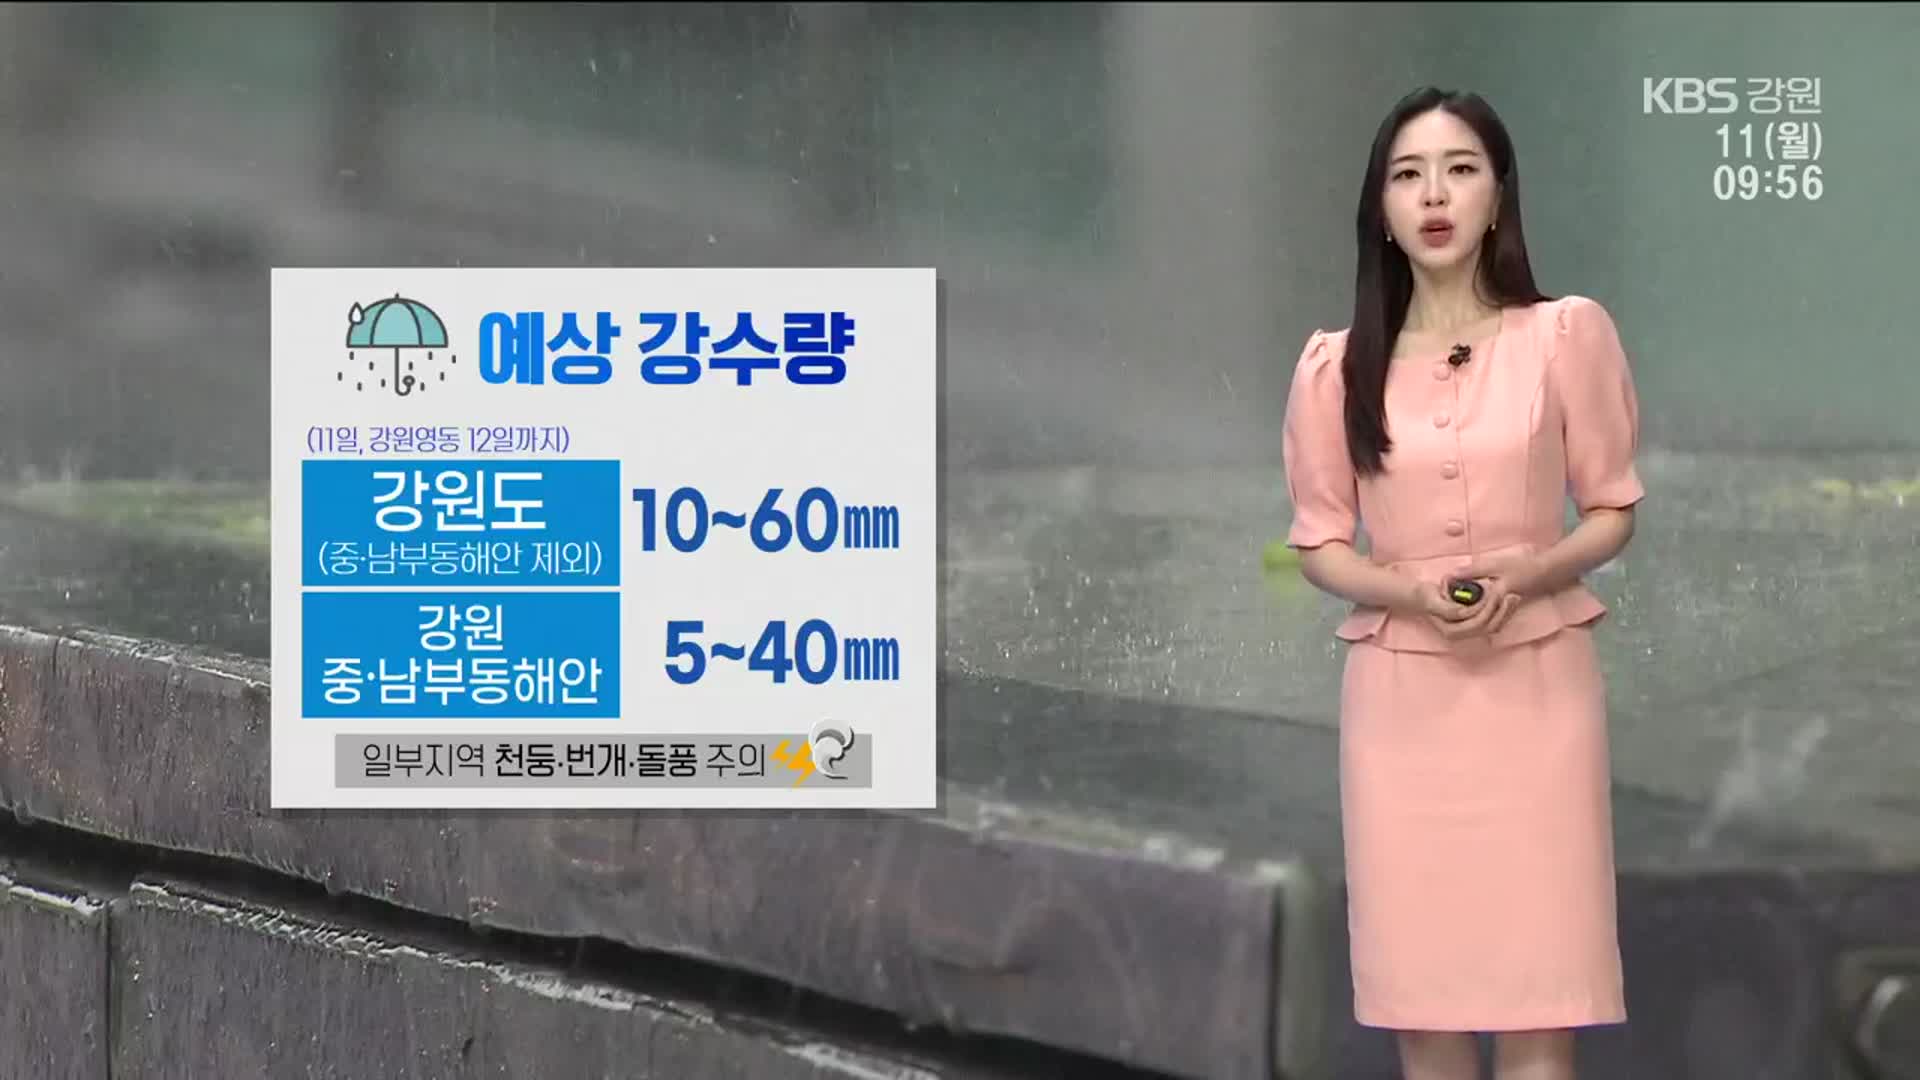 [날씨] 강원 영동 내일까지 비…이번 주 우산 필수!